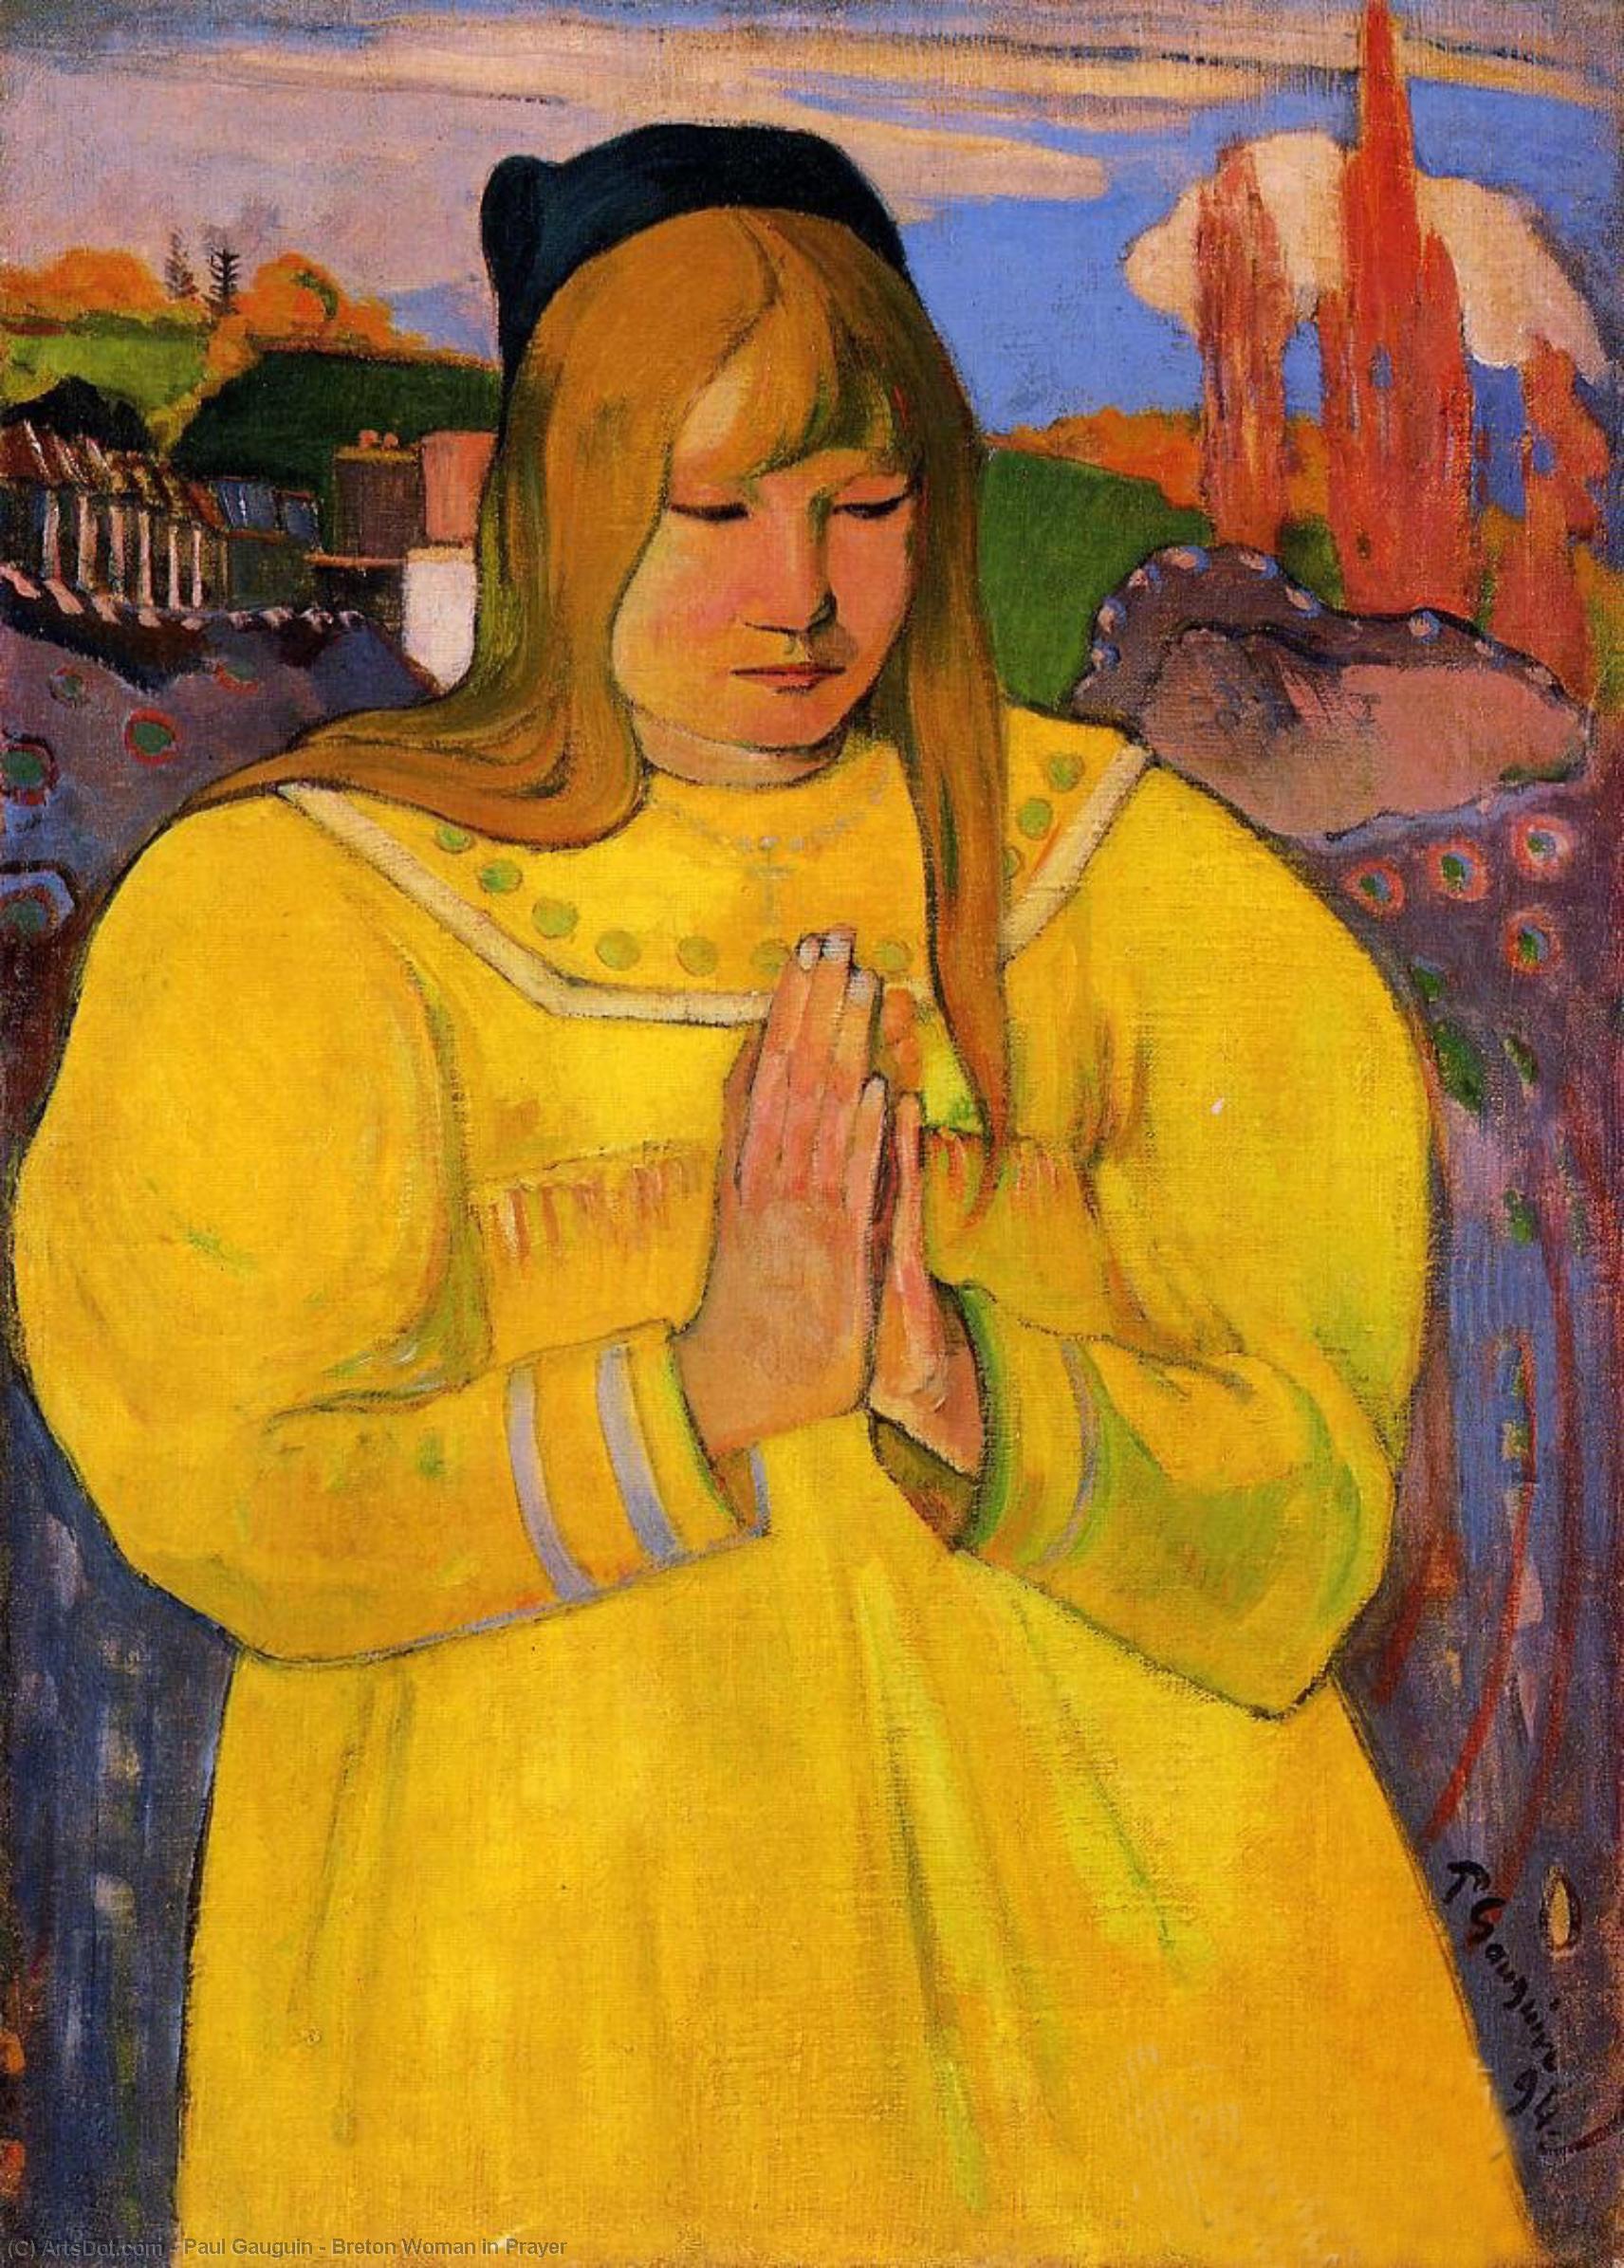 WikiOO.org - Güzel Sanatlar Ansiklopedisi - Resim, Resimler Paul Gauguin - Breton Woman in Prayer